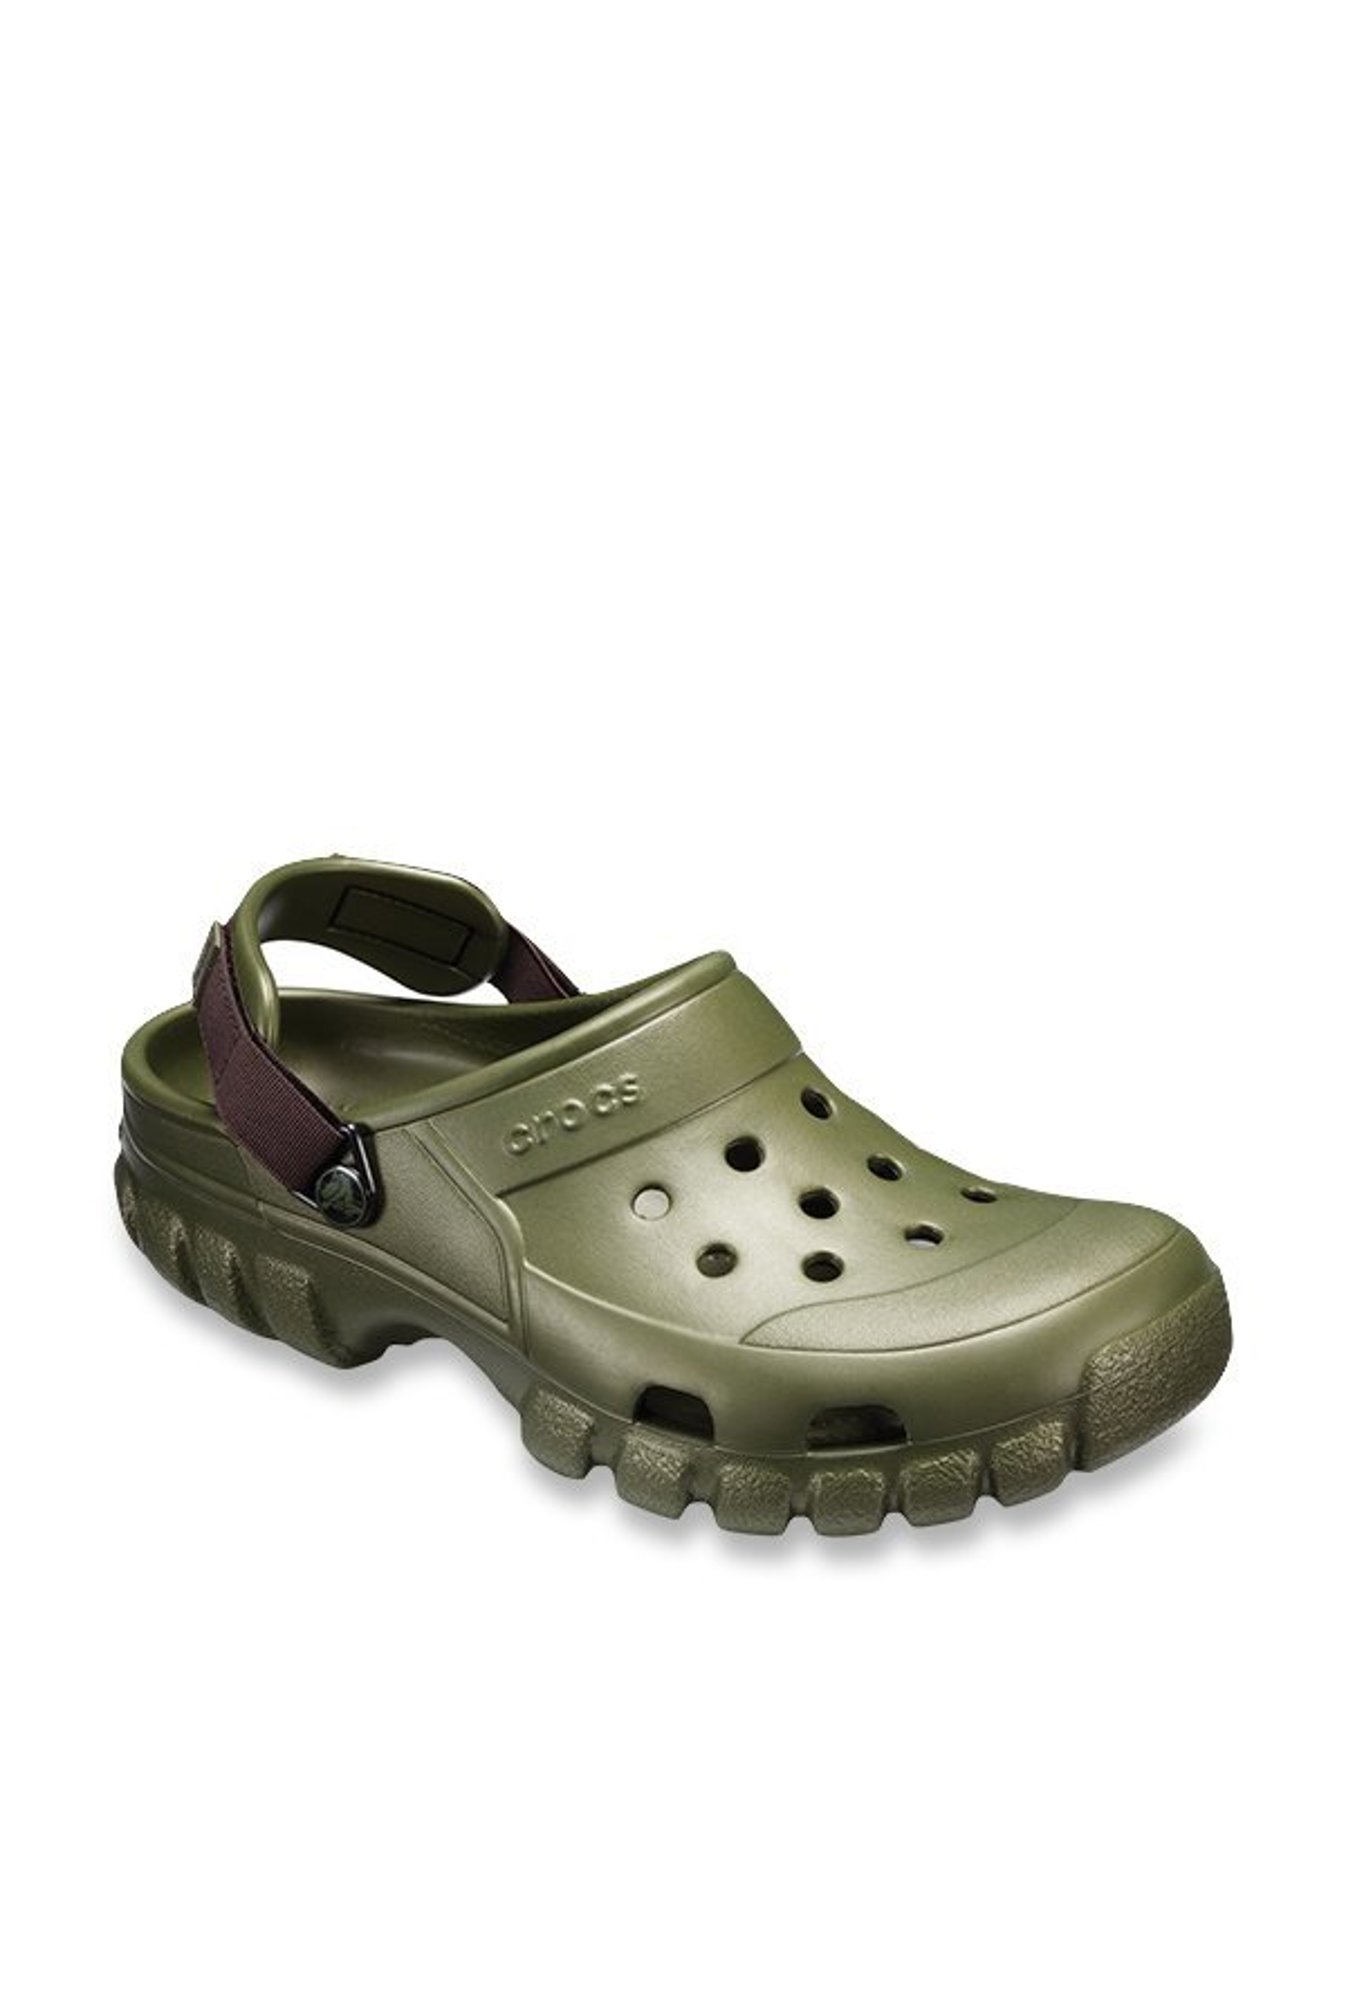 crocs military colour